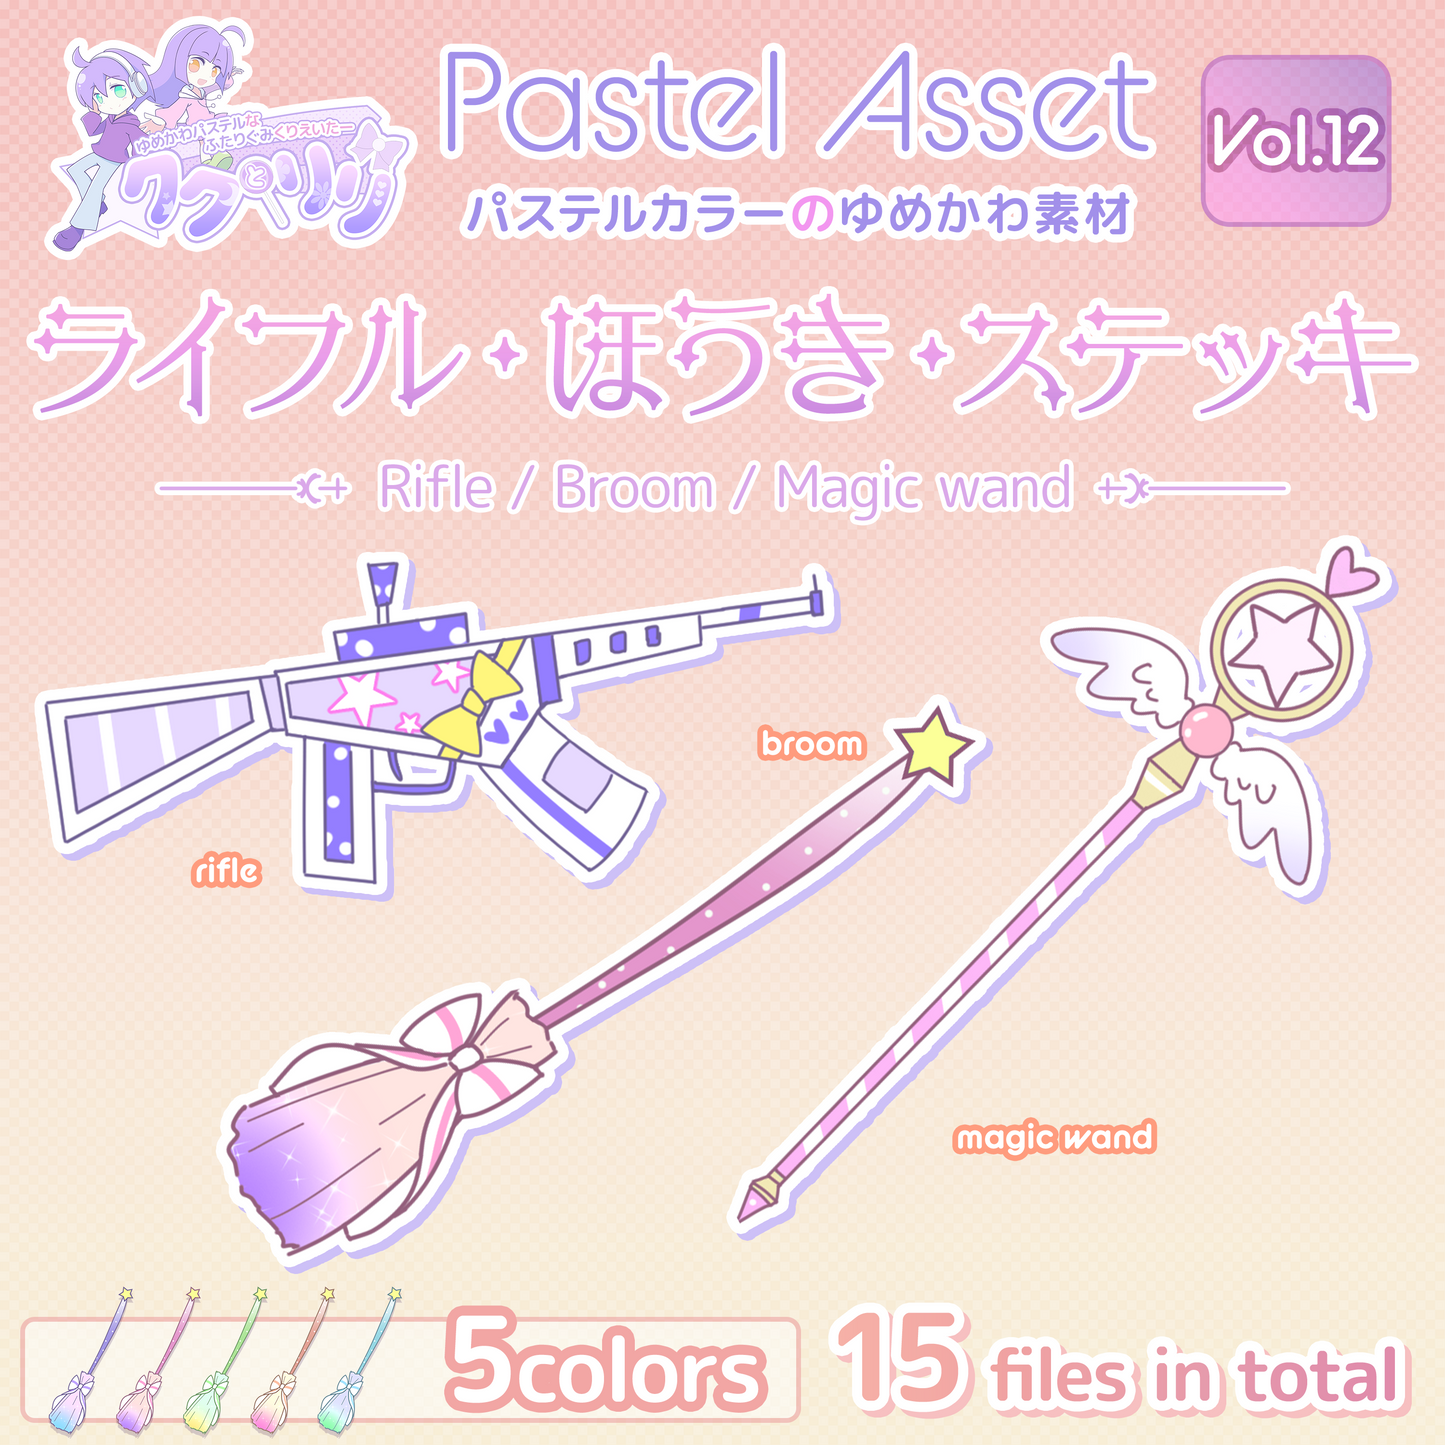 ゆめかわライフル ほうき 魔法のステッキセット Pastel Asset Vol 12 イラスト素材 Vtuber Pastelworks